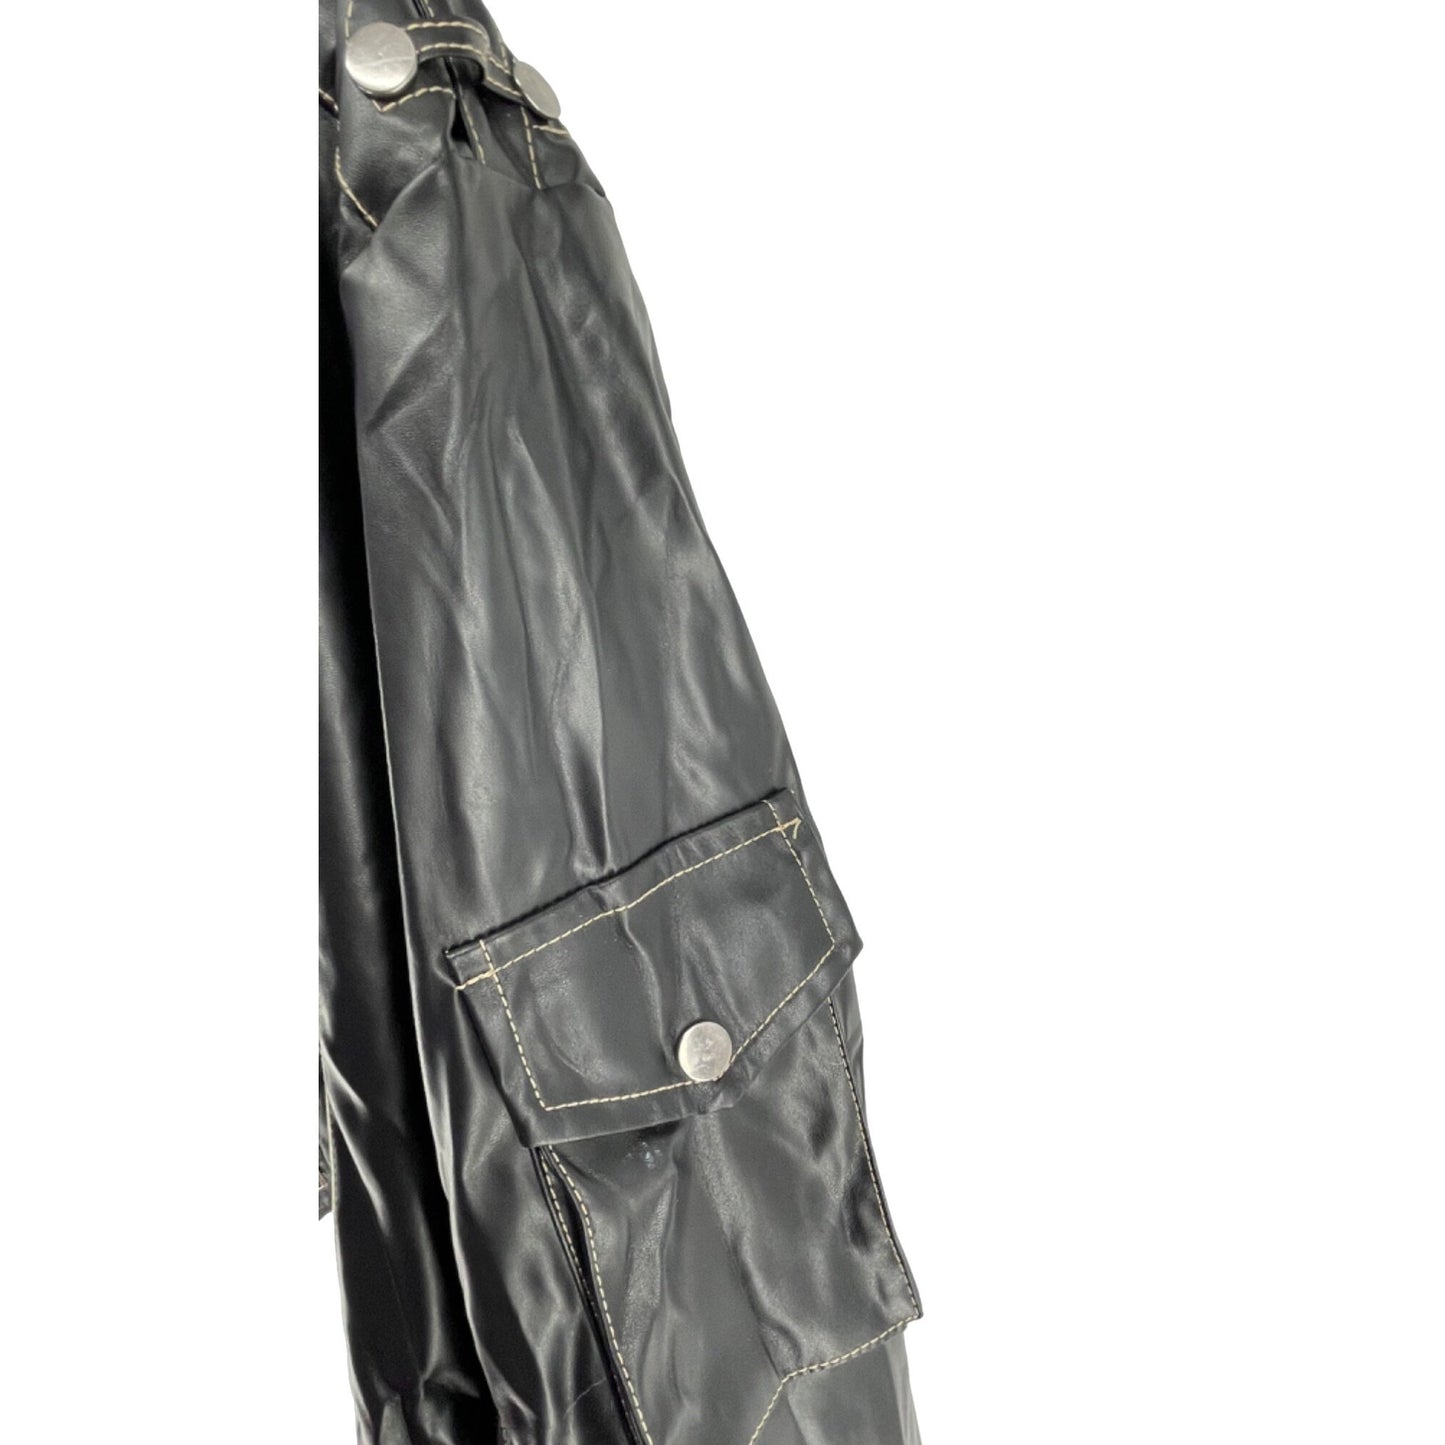 Women's Size 4XL Black Patent Vinyl Faux Leather Moto Chic Jacket